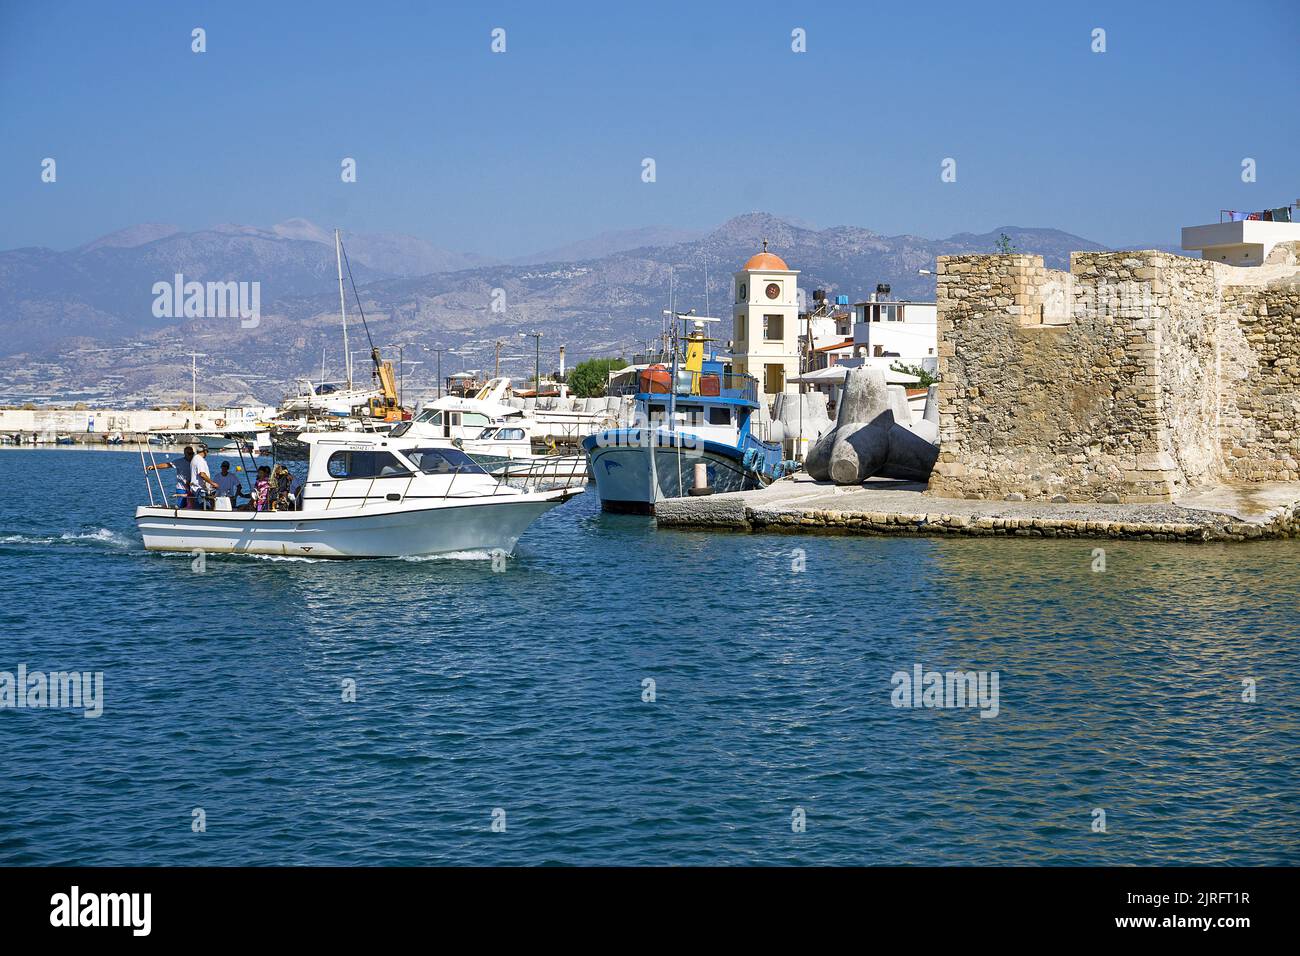 Fischerboote im Hafen von Ierapetra, der alten venezianischen Festung, ist Ierapetra die südlichste Stadt Griechenlands, Kretas, Griechenlands und Europas Stockfoto